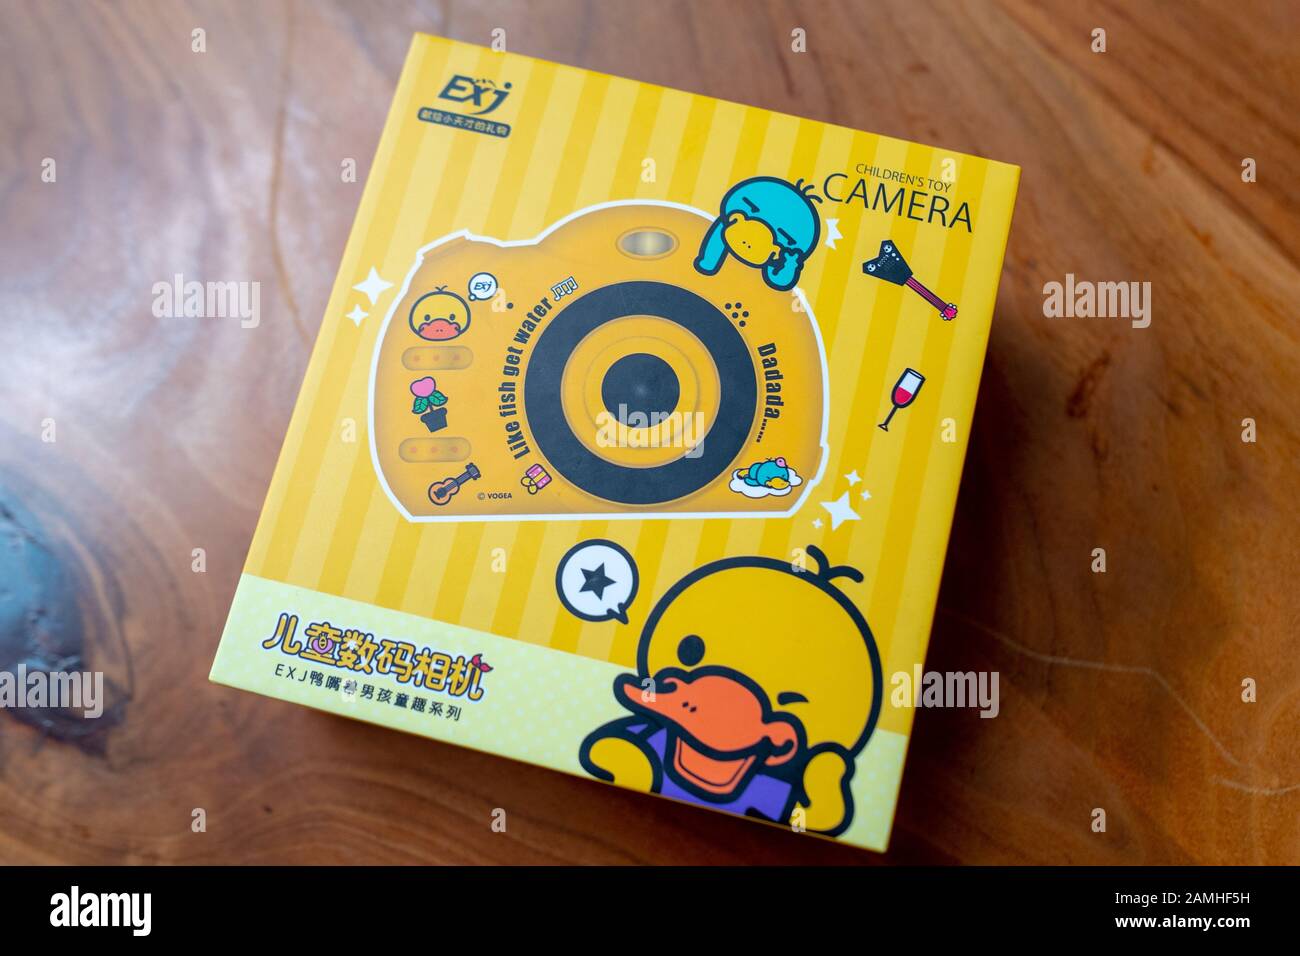 Gros plan de la boîte pour l'appareil photo numérique en plastique jaune pour enfant de Chine, un jouet populaire pour enfants dans le pays, sur fond de bois, 14 décembre 2019. () Banque D'Images